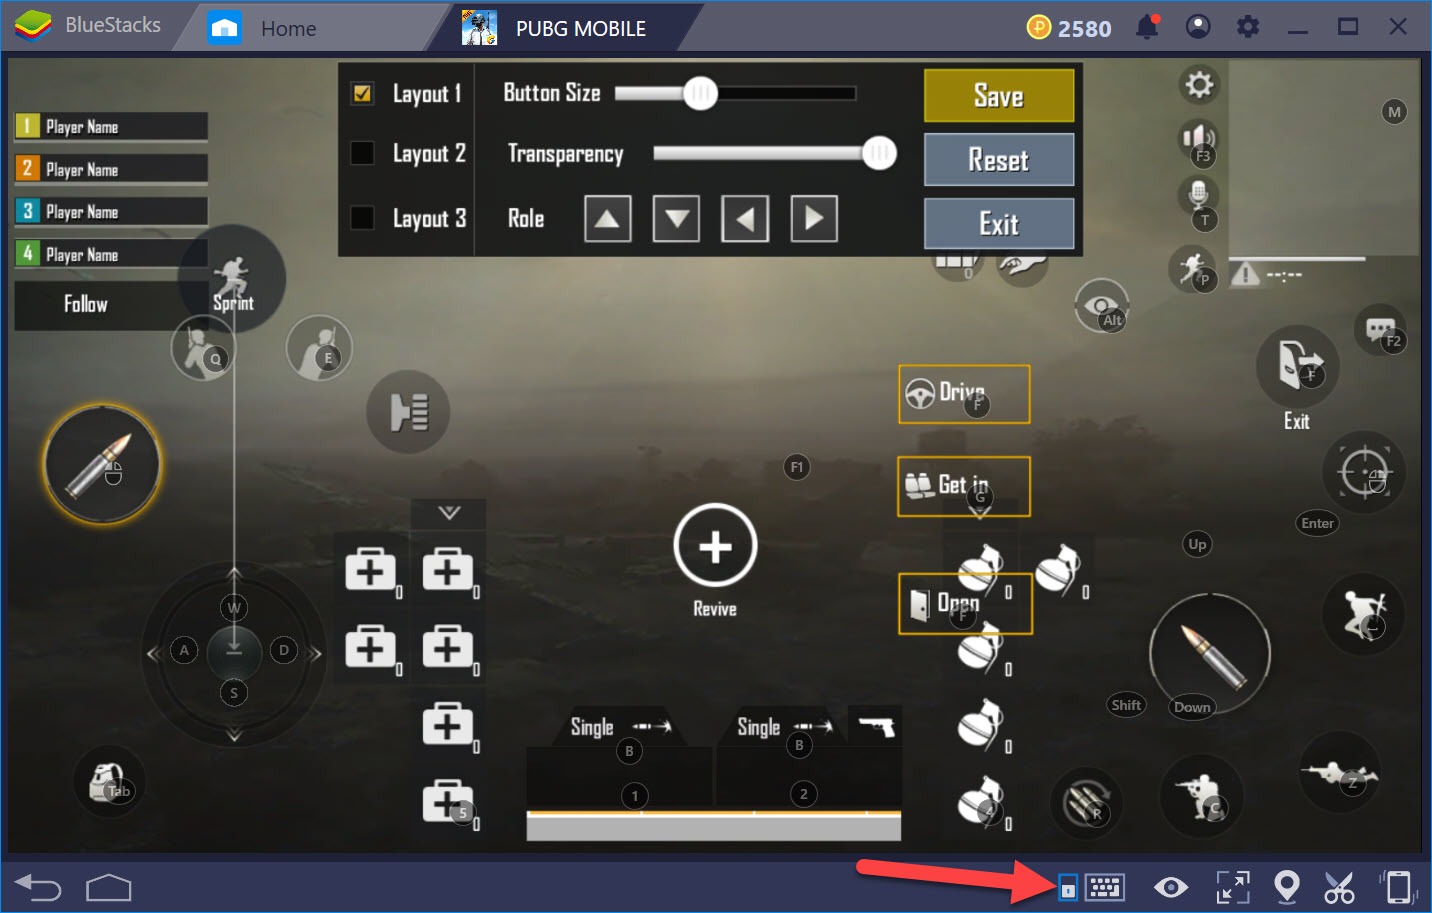 Hướng dẫn thiết lập Game controls khi chơi PUBG Mobile với BlueStacks 4